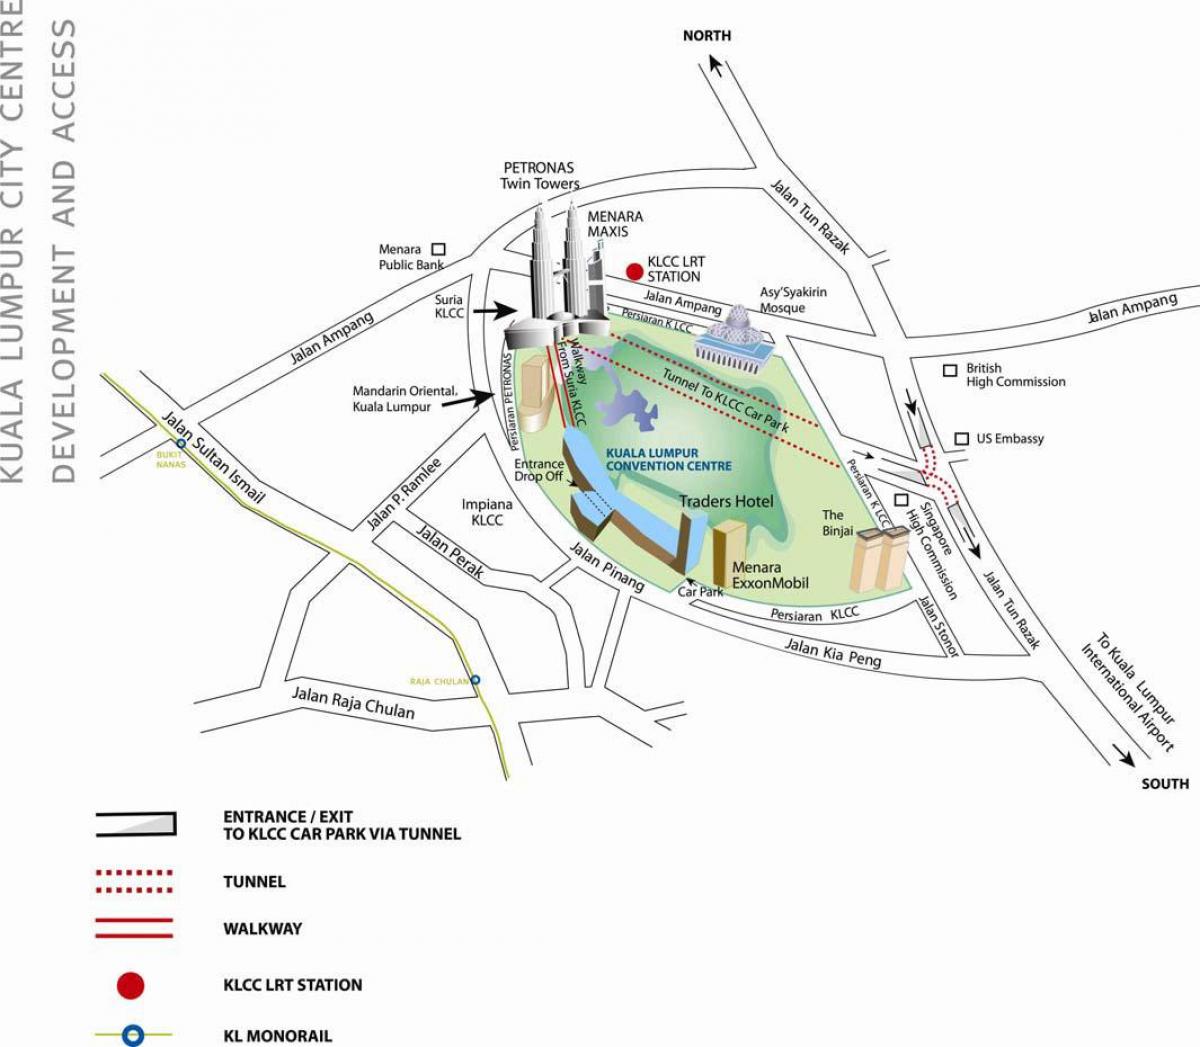 Harta e kuala lumpur konventës qendra